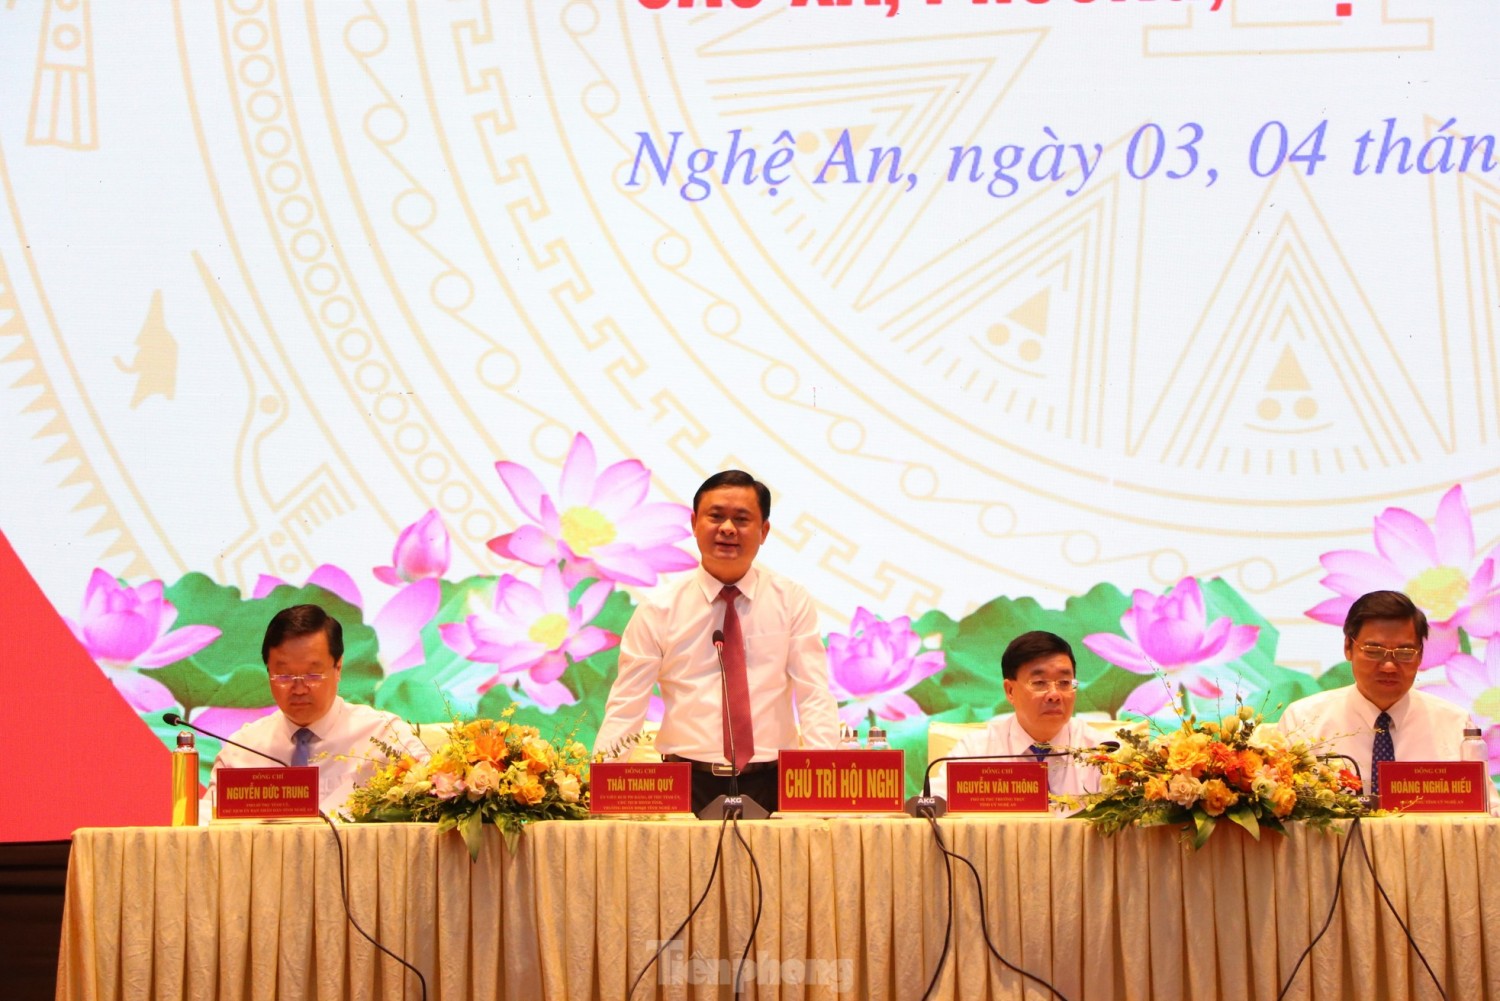 Một số giải pháp cơ bản nhằm pháy huy vai trò lãnh đạo của Đảng ủy cấp xã trong xây dựng nông thôn mới ở Nghệ An hiện nay